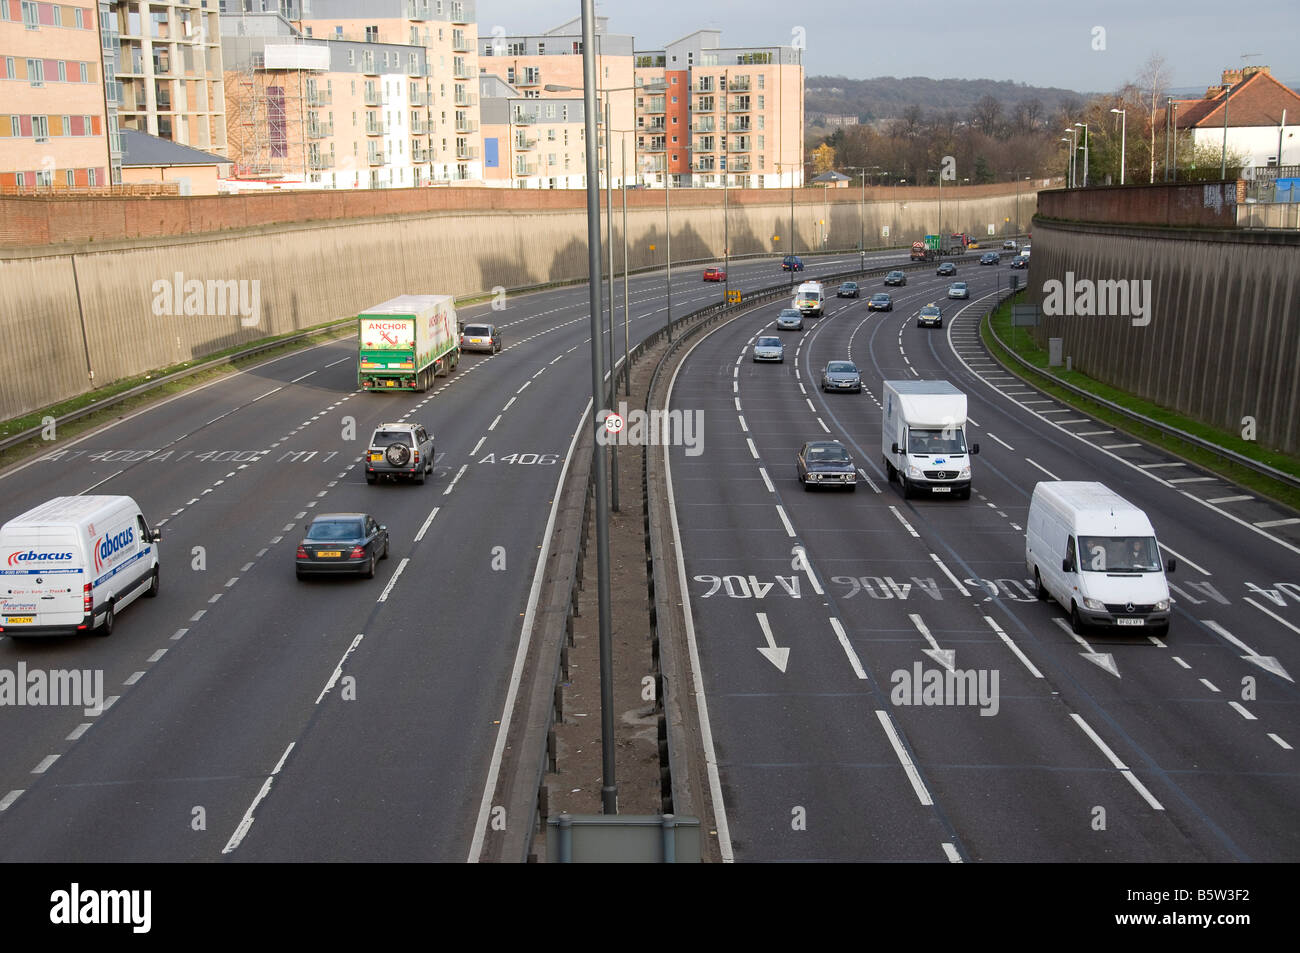 Norden kreisförmige A406 London South Woodford Verkehr beschäftigt Autos Lastwagen LKW Transporter Straßenschild leuchtet Gassen Autobahn Ringroad Stockfoto